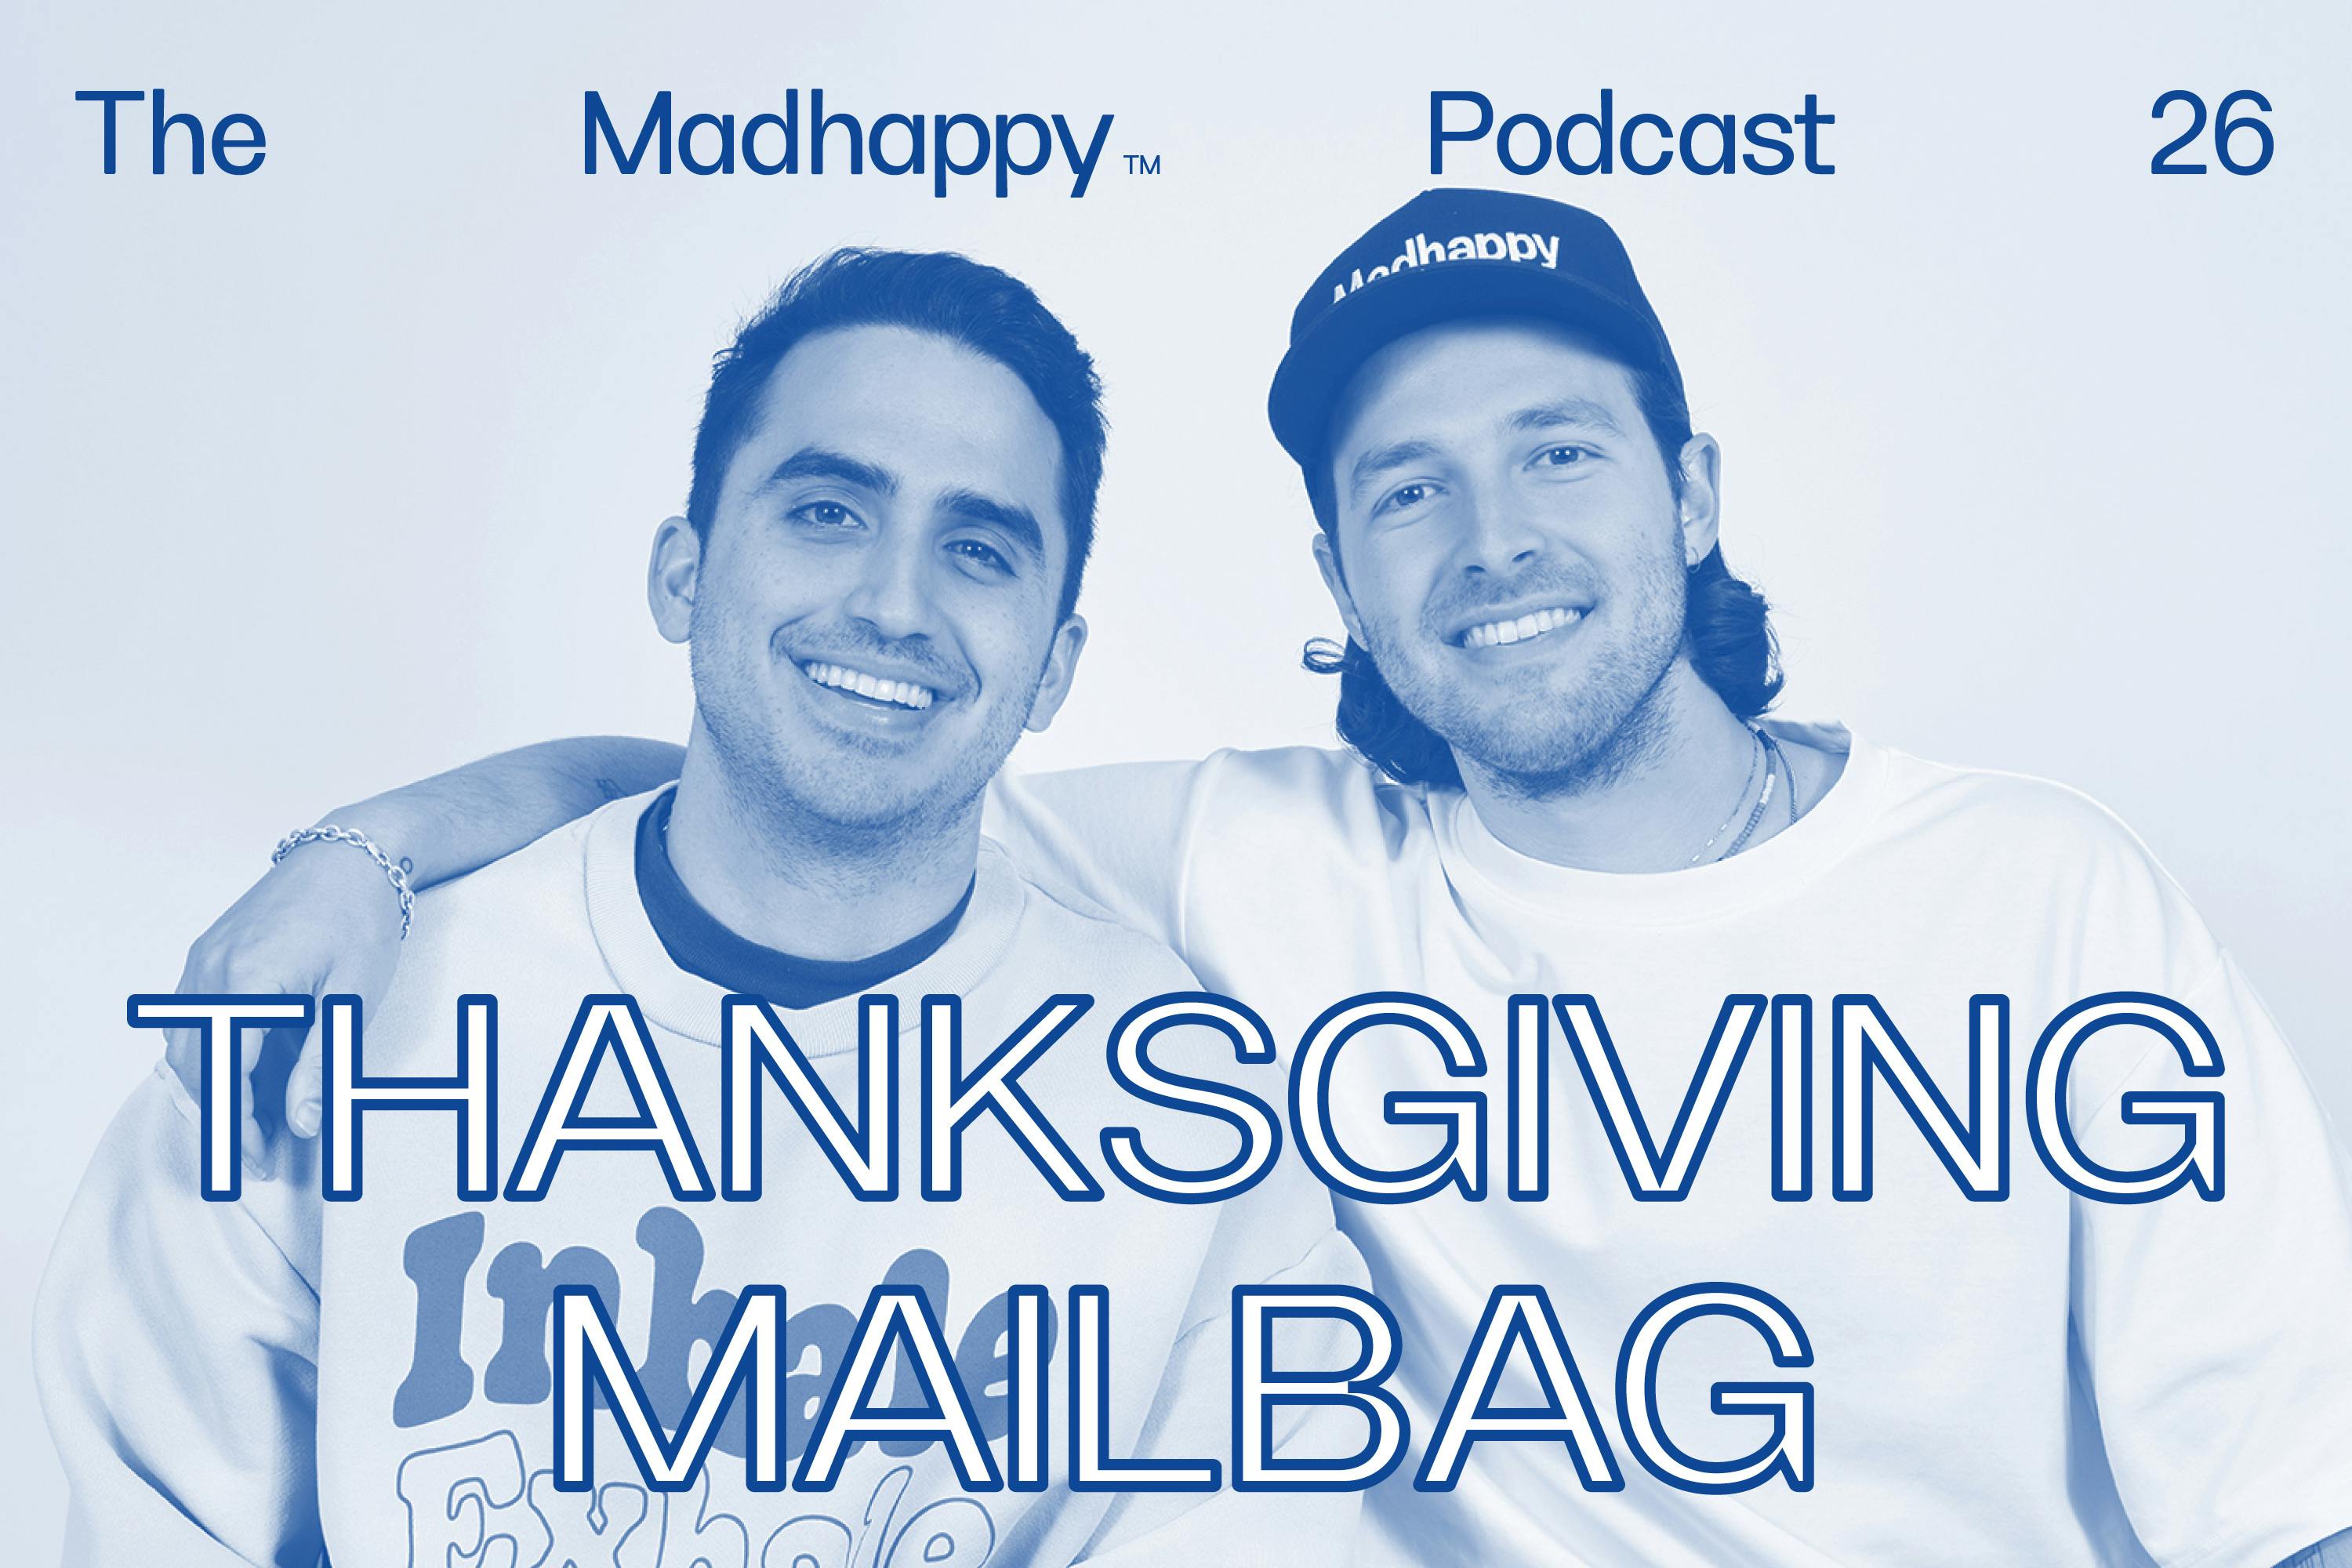 Episode 26: Thanksgiving